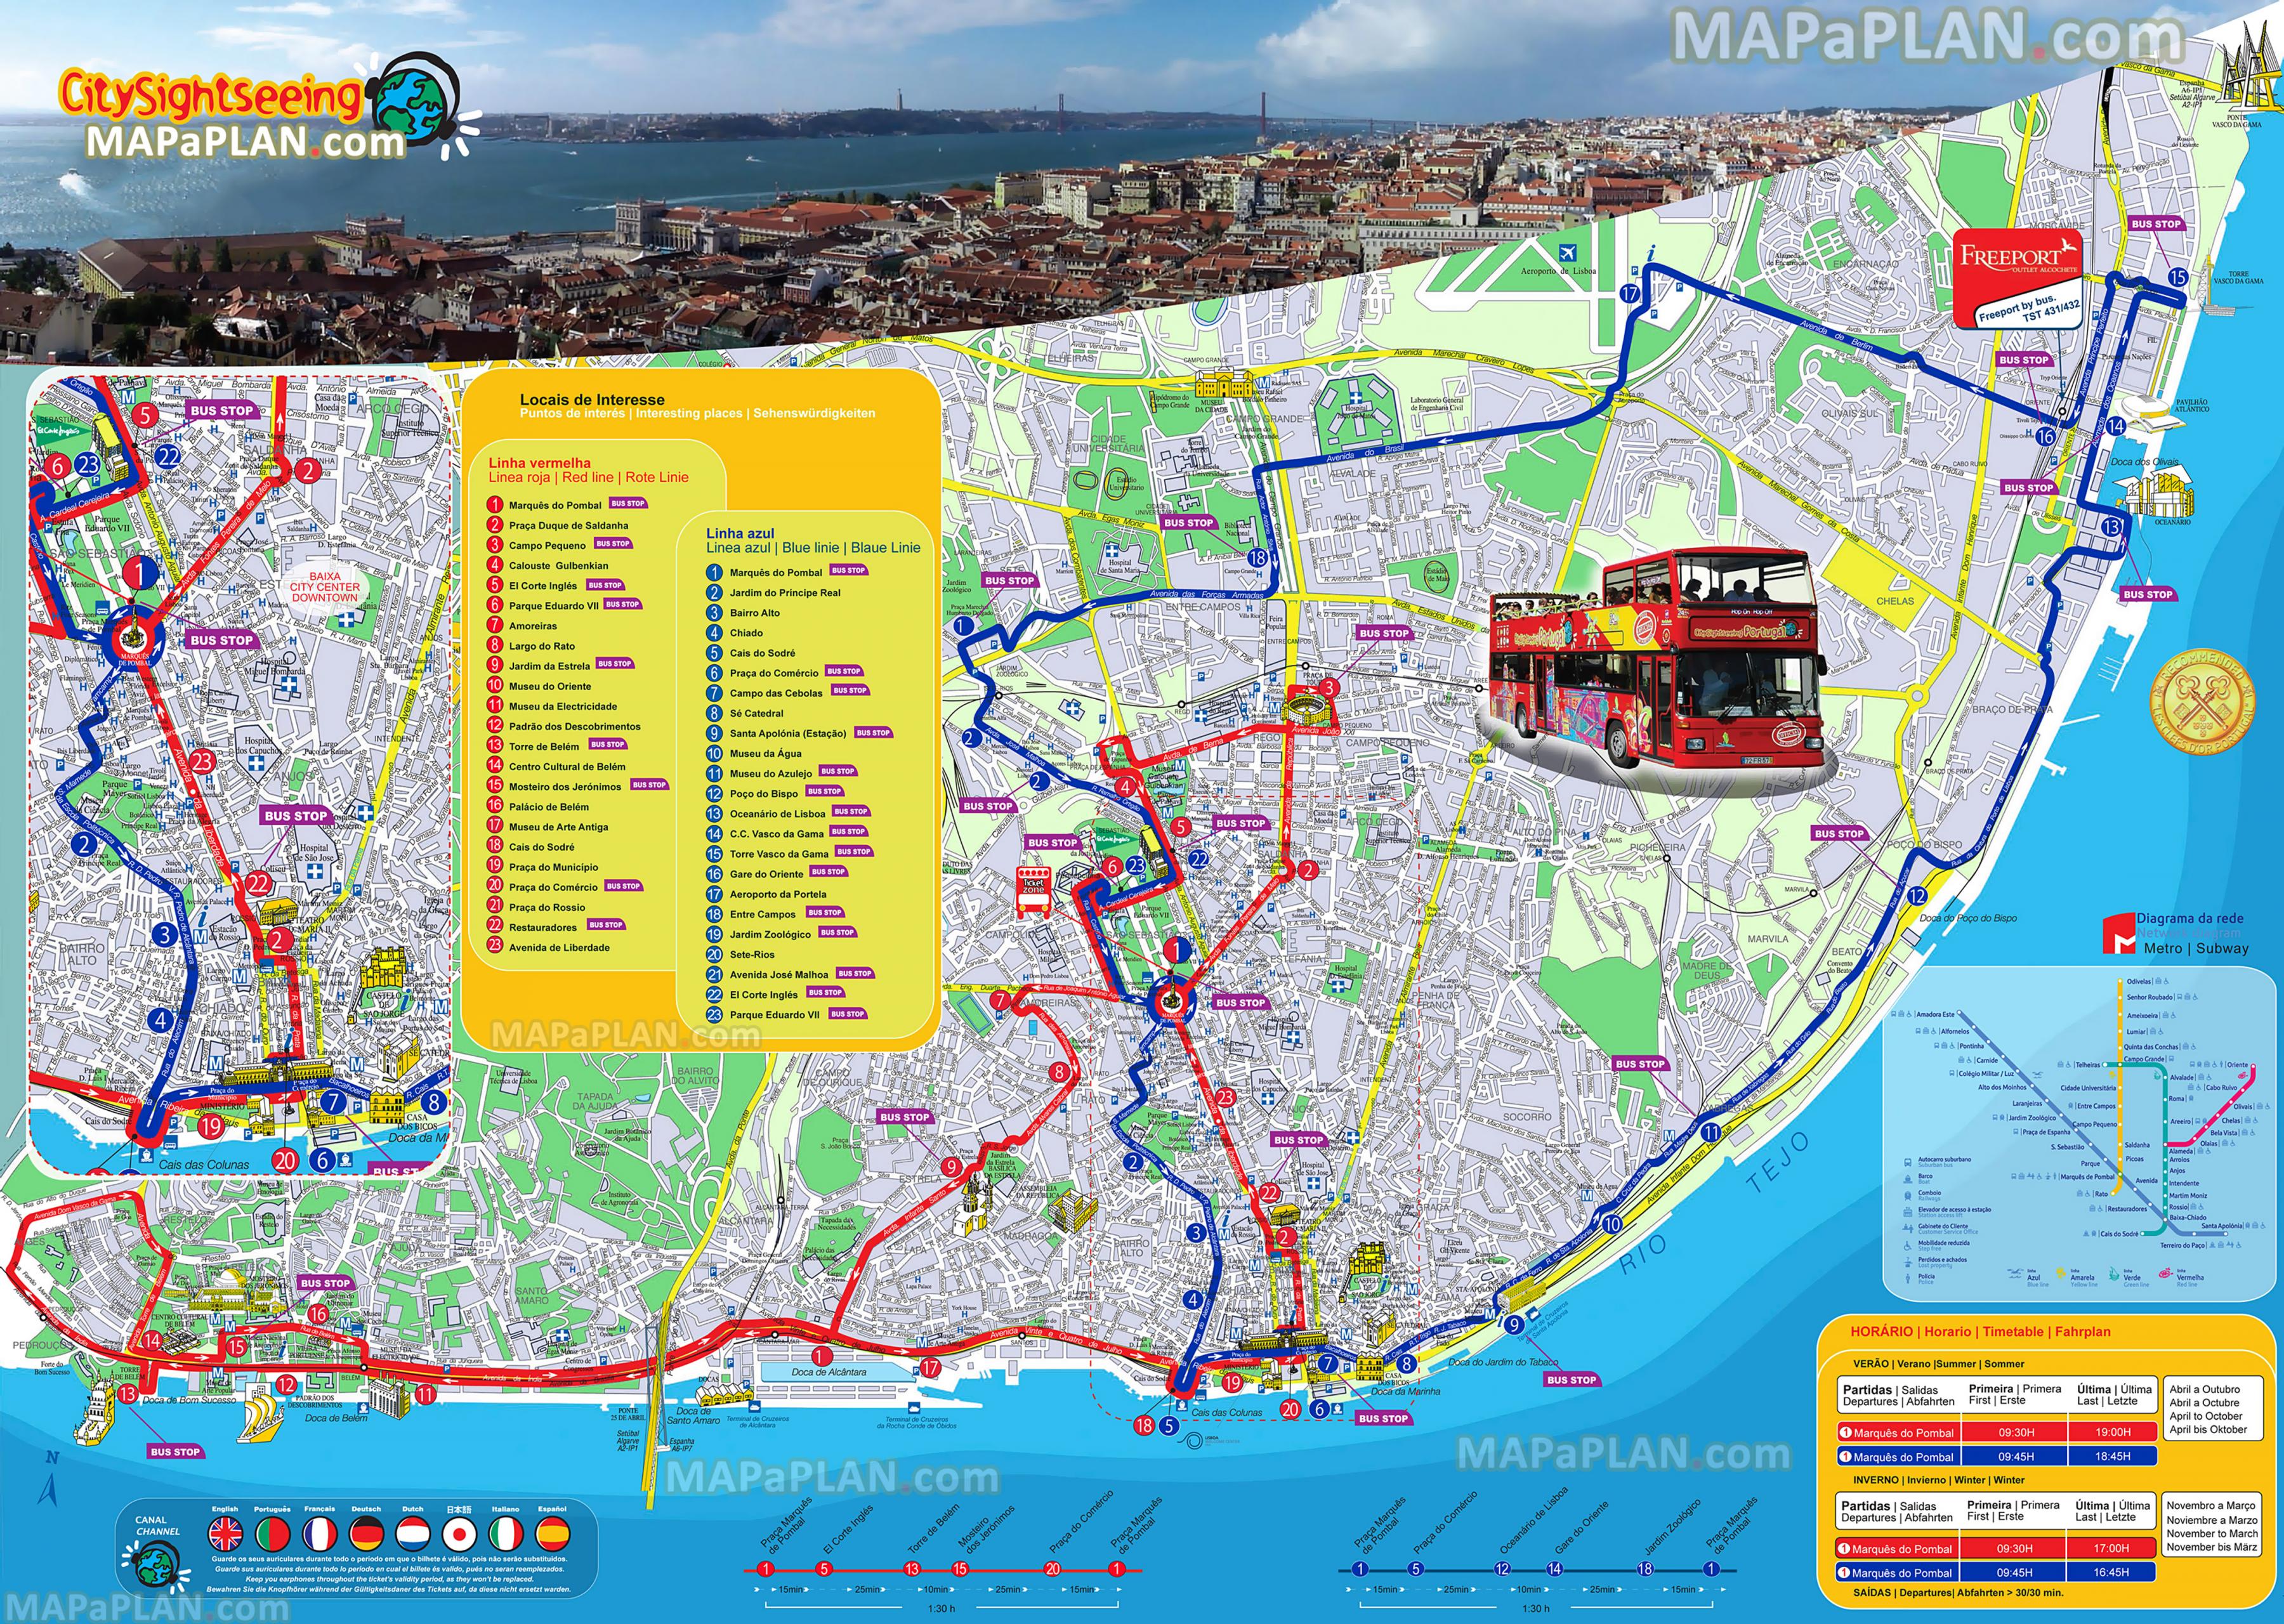 gray line bus tours lisbon portugal